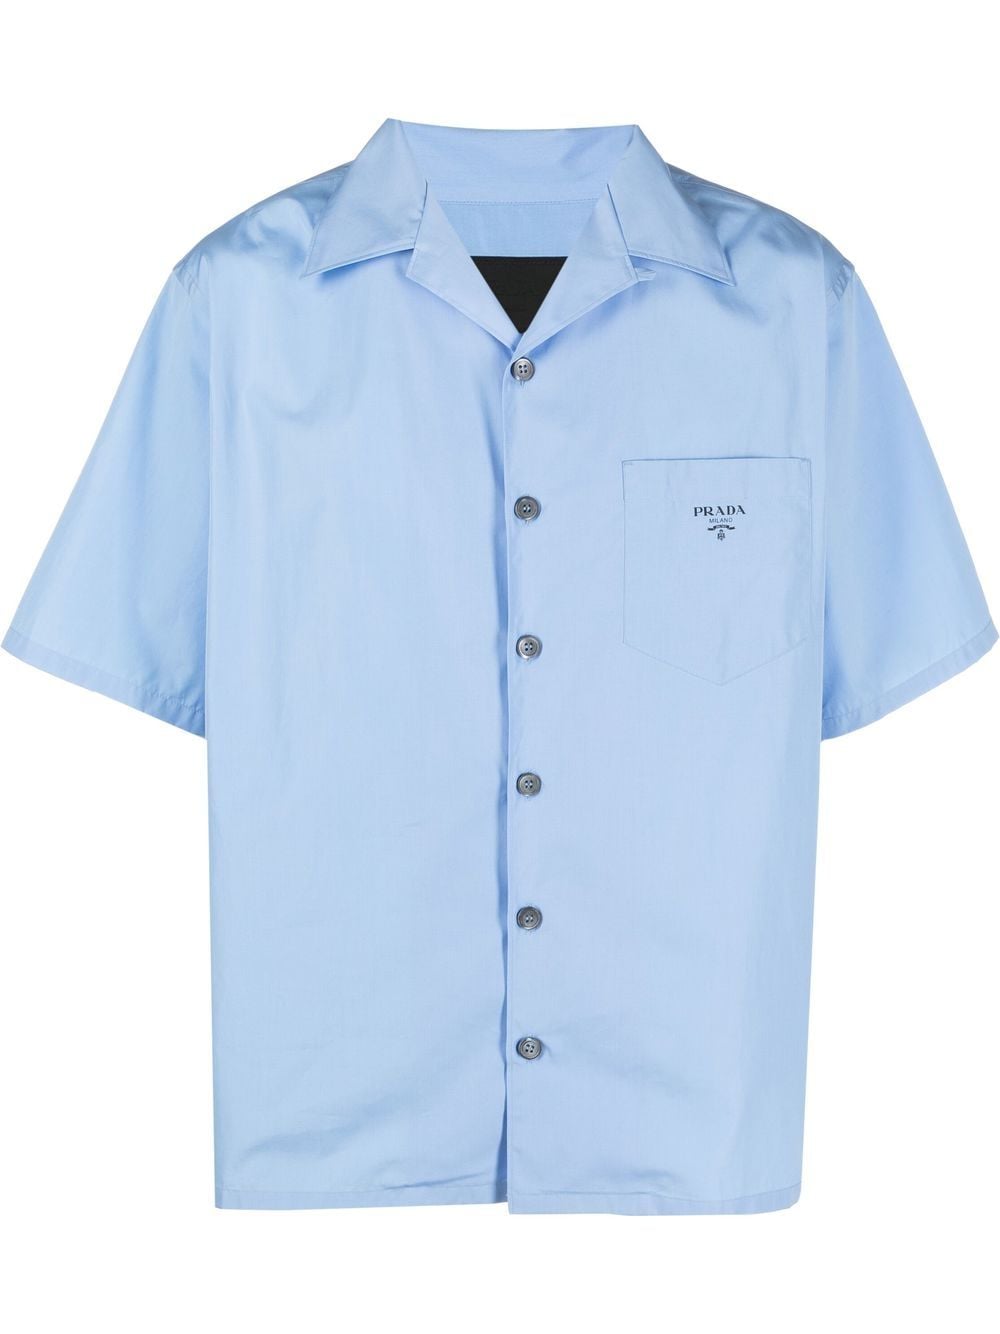 Prada Short Sleeve Cotton Shirt Blue Men's - SS22 - US